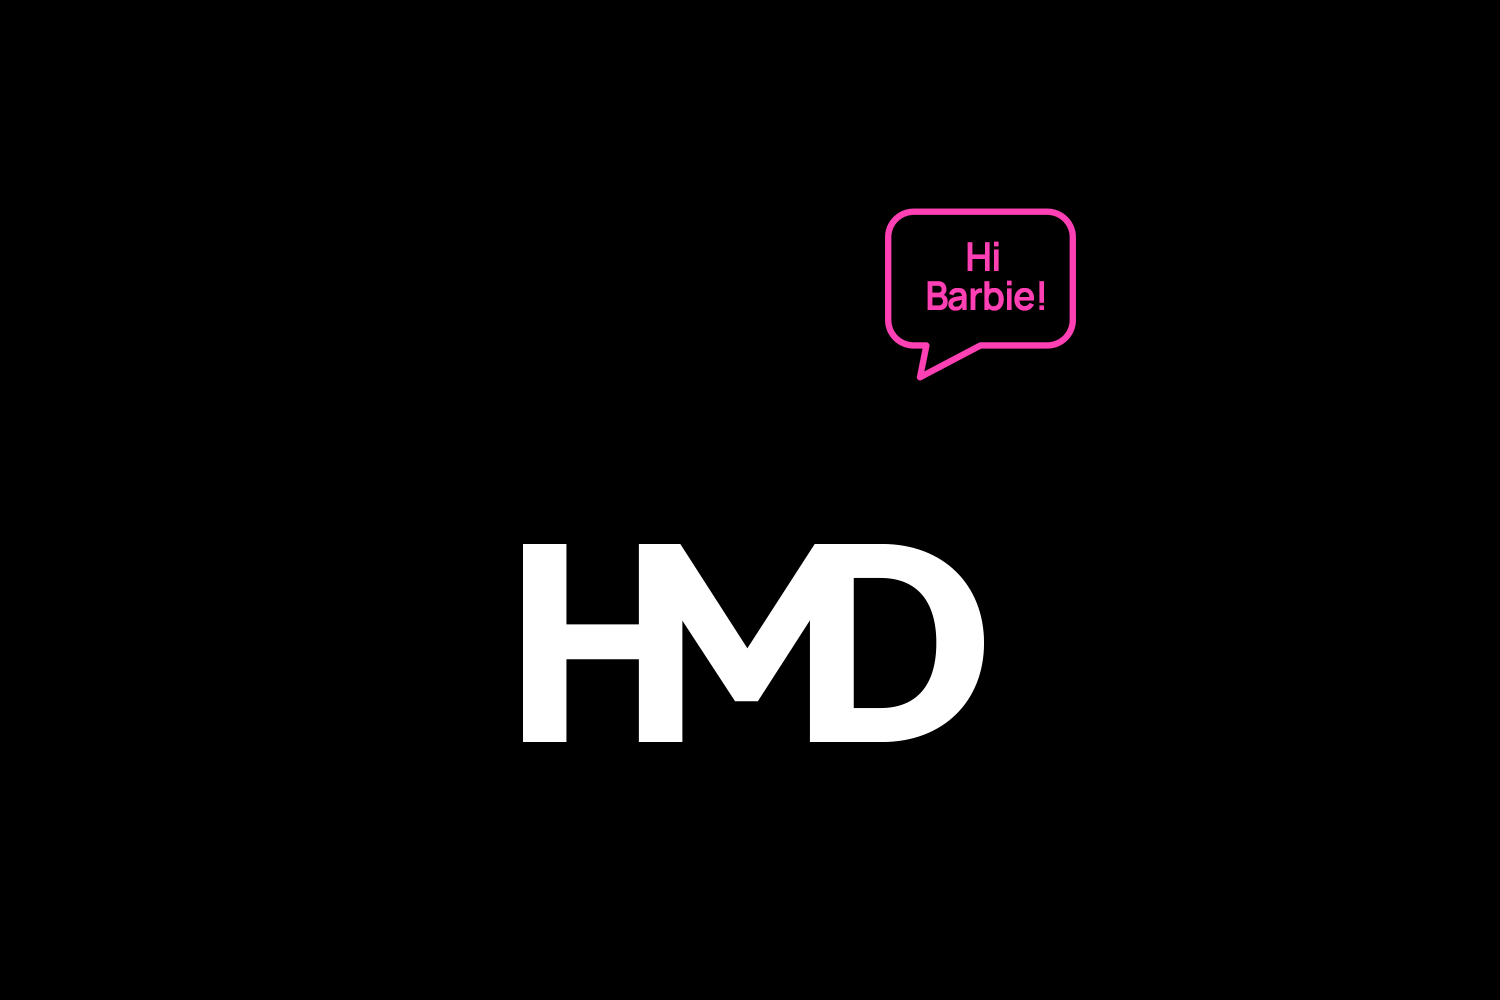 Un'immagine promozionale per la partnership tra HMD Global e Mattel.